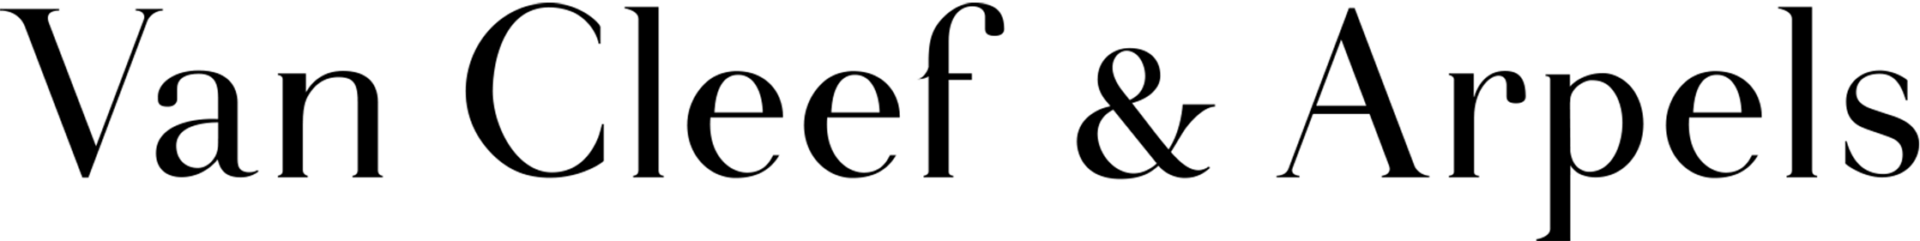 Van Cleef & Arpels ロゴ